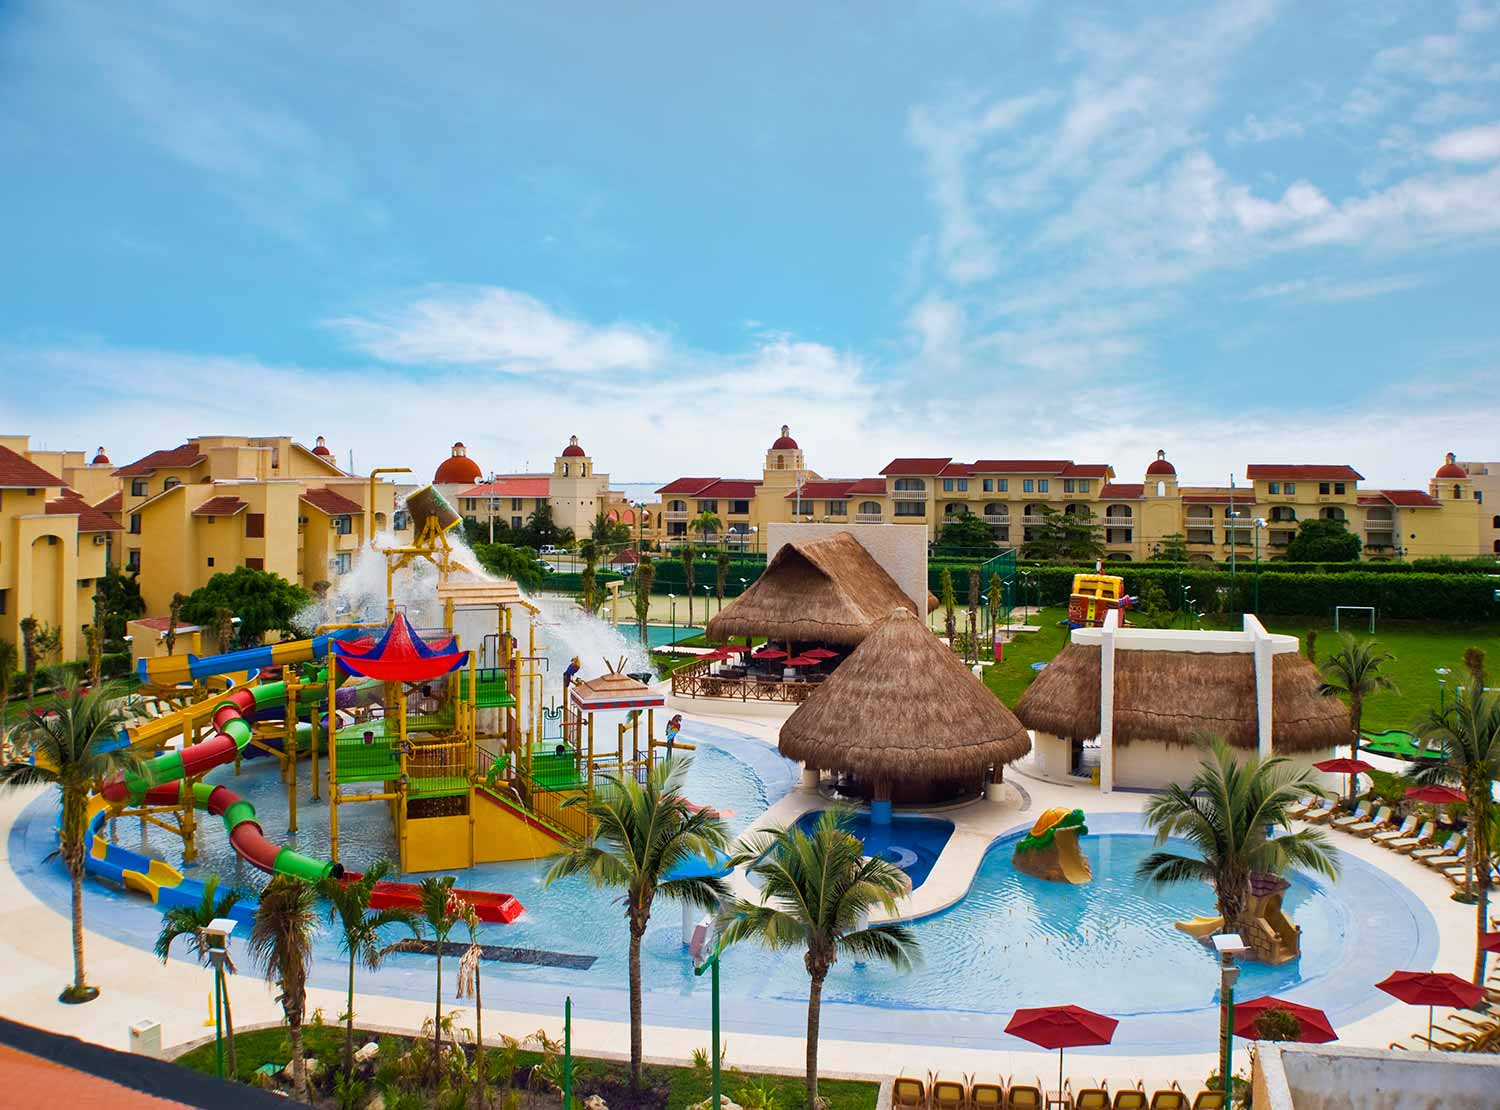 Hoteles familiares en Cancún